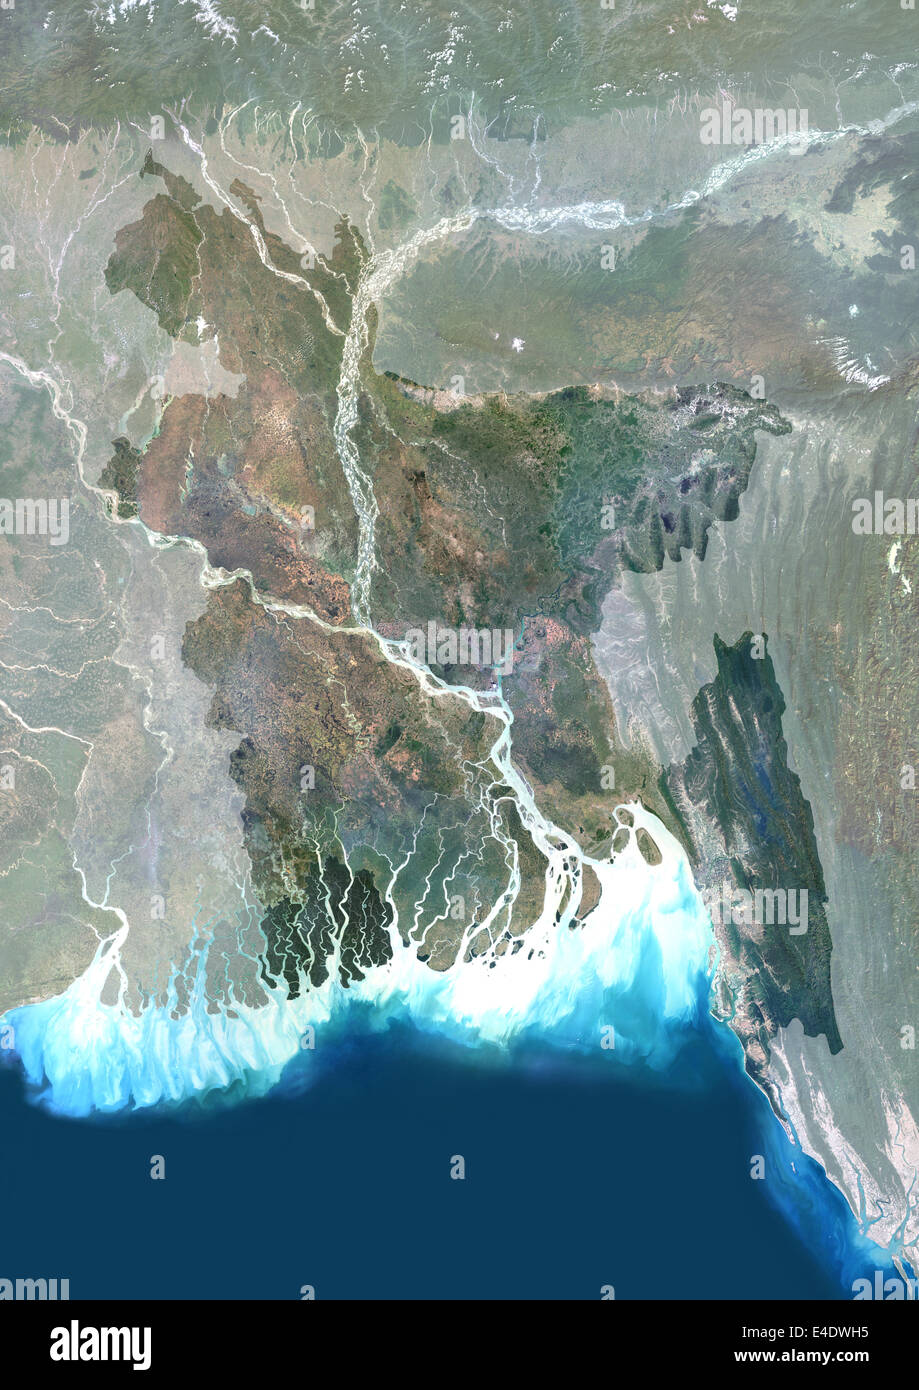 Bangladesch, Asien, Echtfarben-Satellitenbild mit Maske. Satellitenansicht von Bangladesch (mit Maske). Dieses Bild wurde von zusammengestellt. Stockfoto